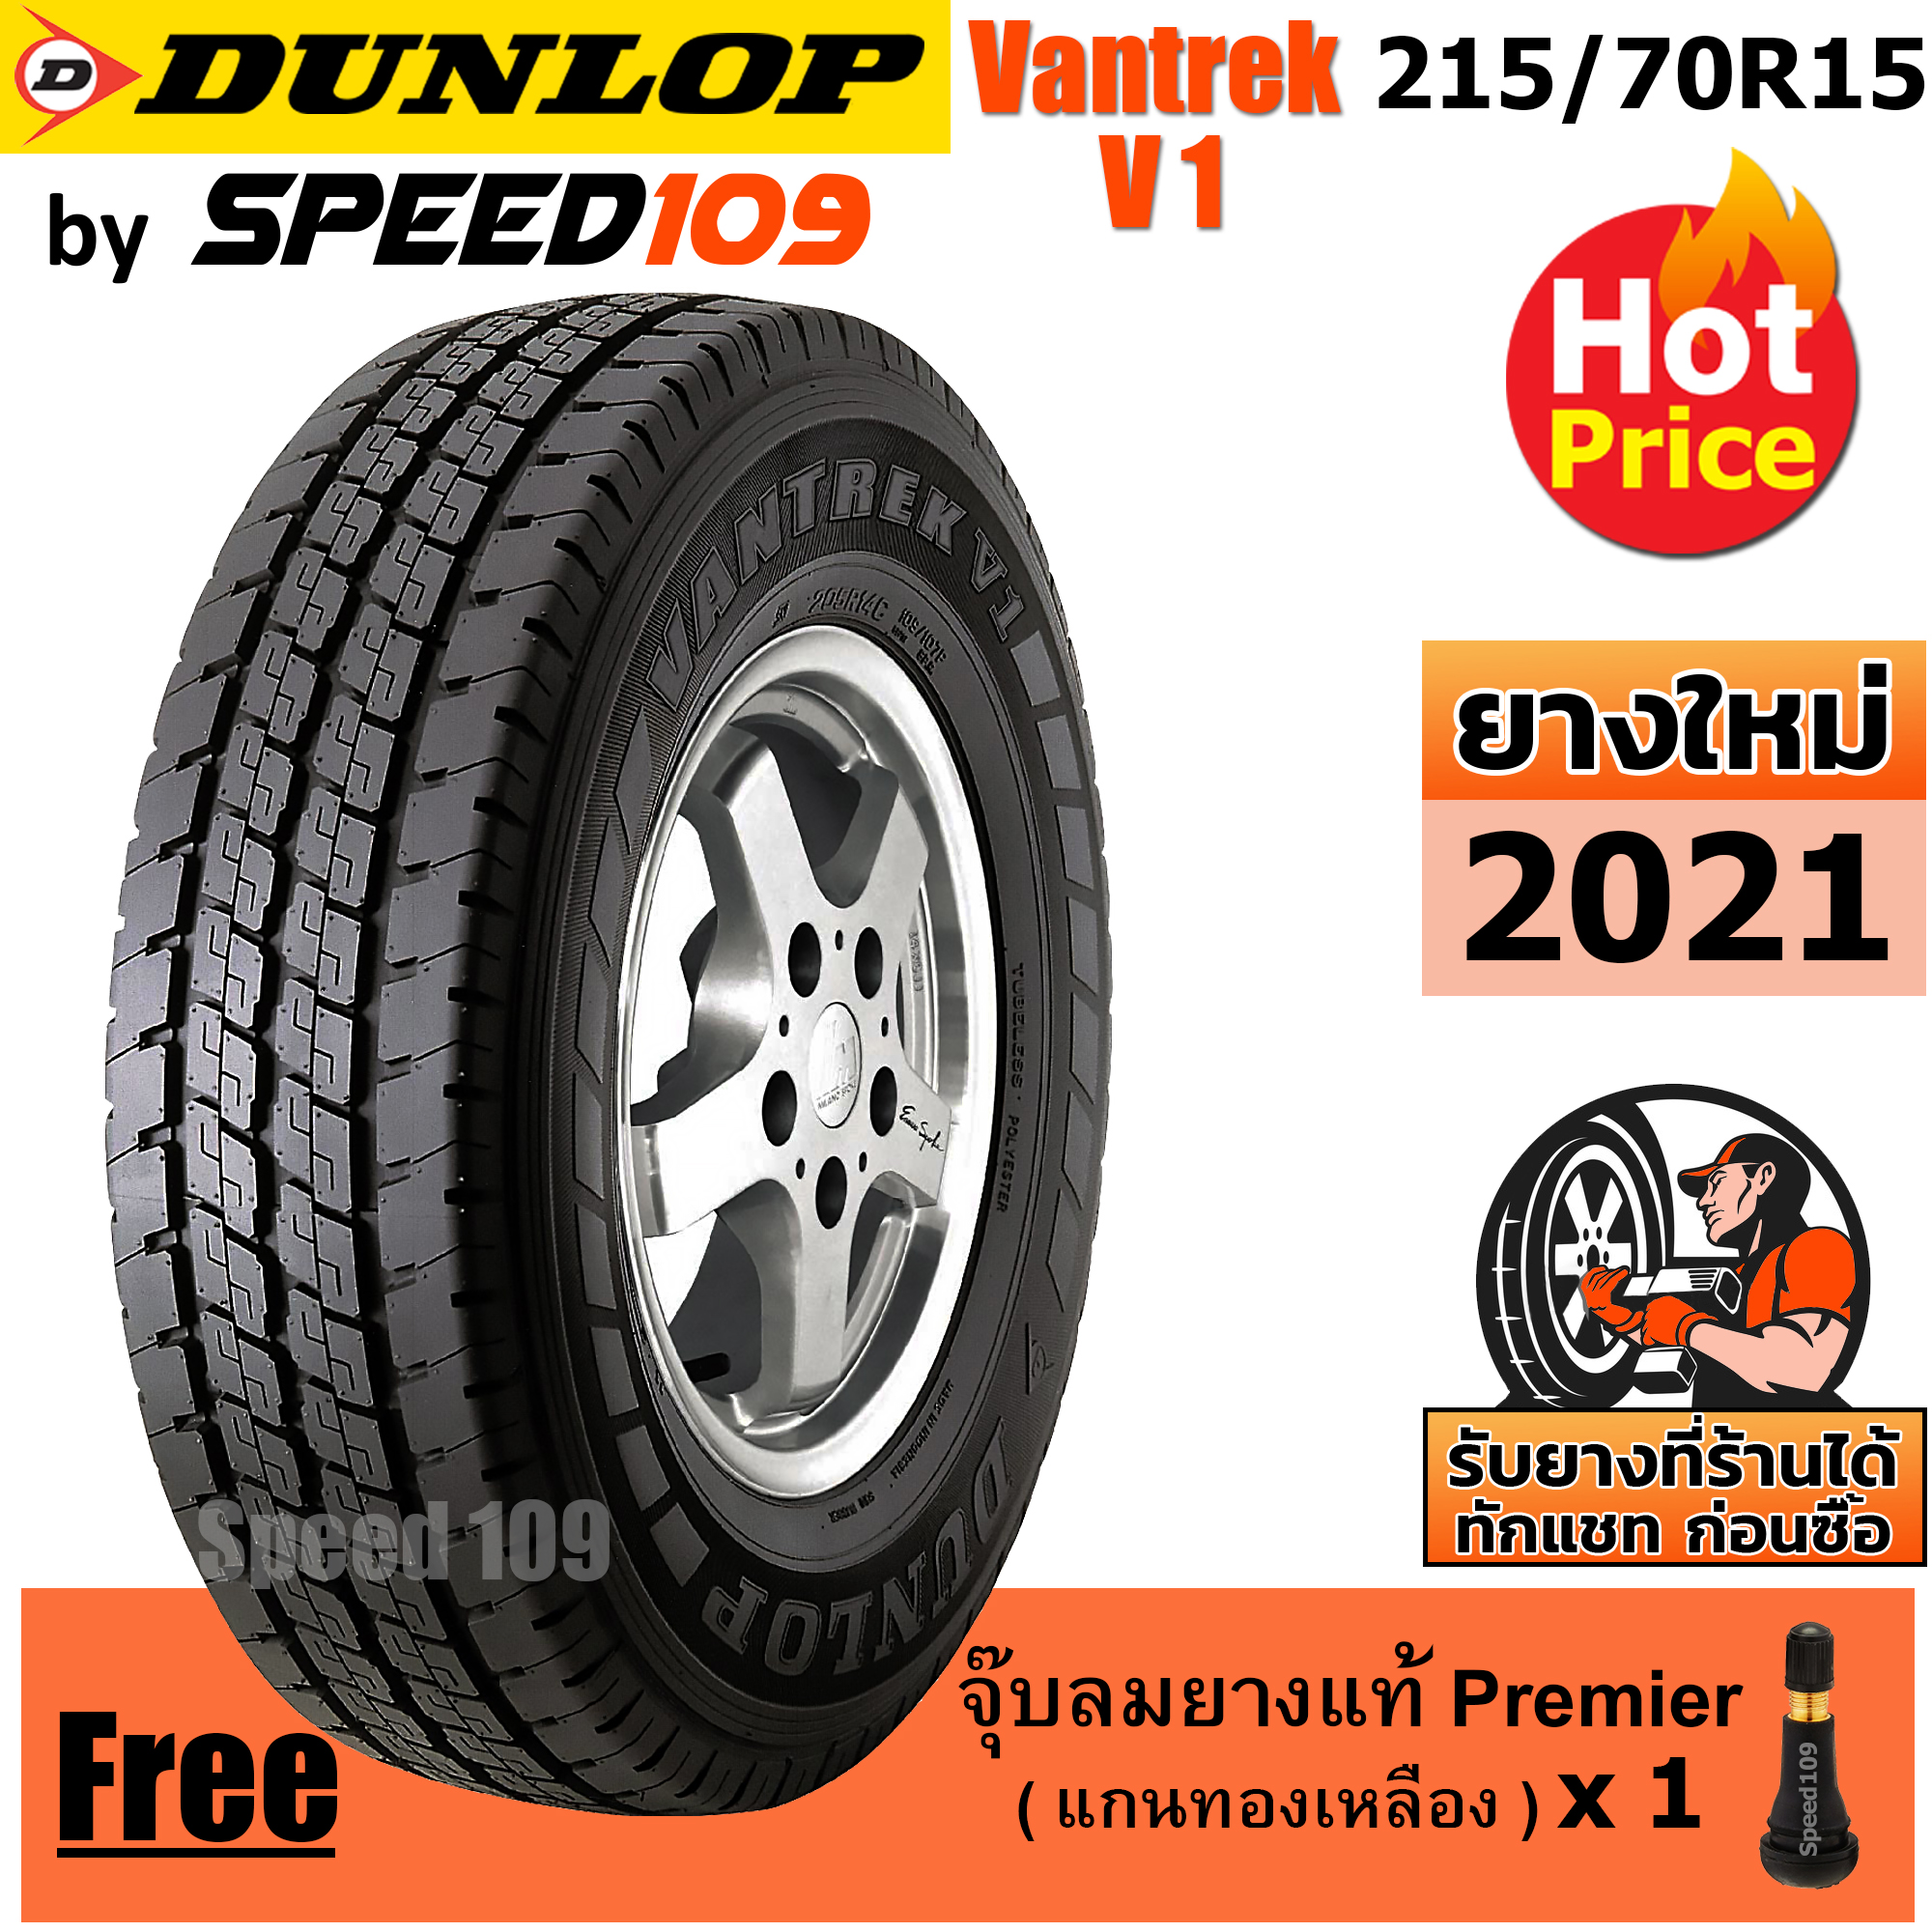 DUNLOP ยางรถยนต์ ขอบ 15 ขนาด 215/70R15 รุ่น Vantrek V1 - 1 เส้น (ปี 2021)